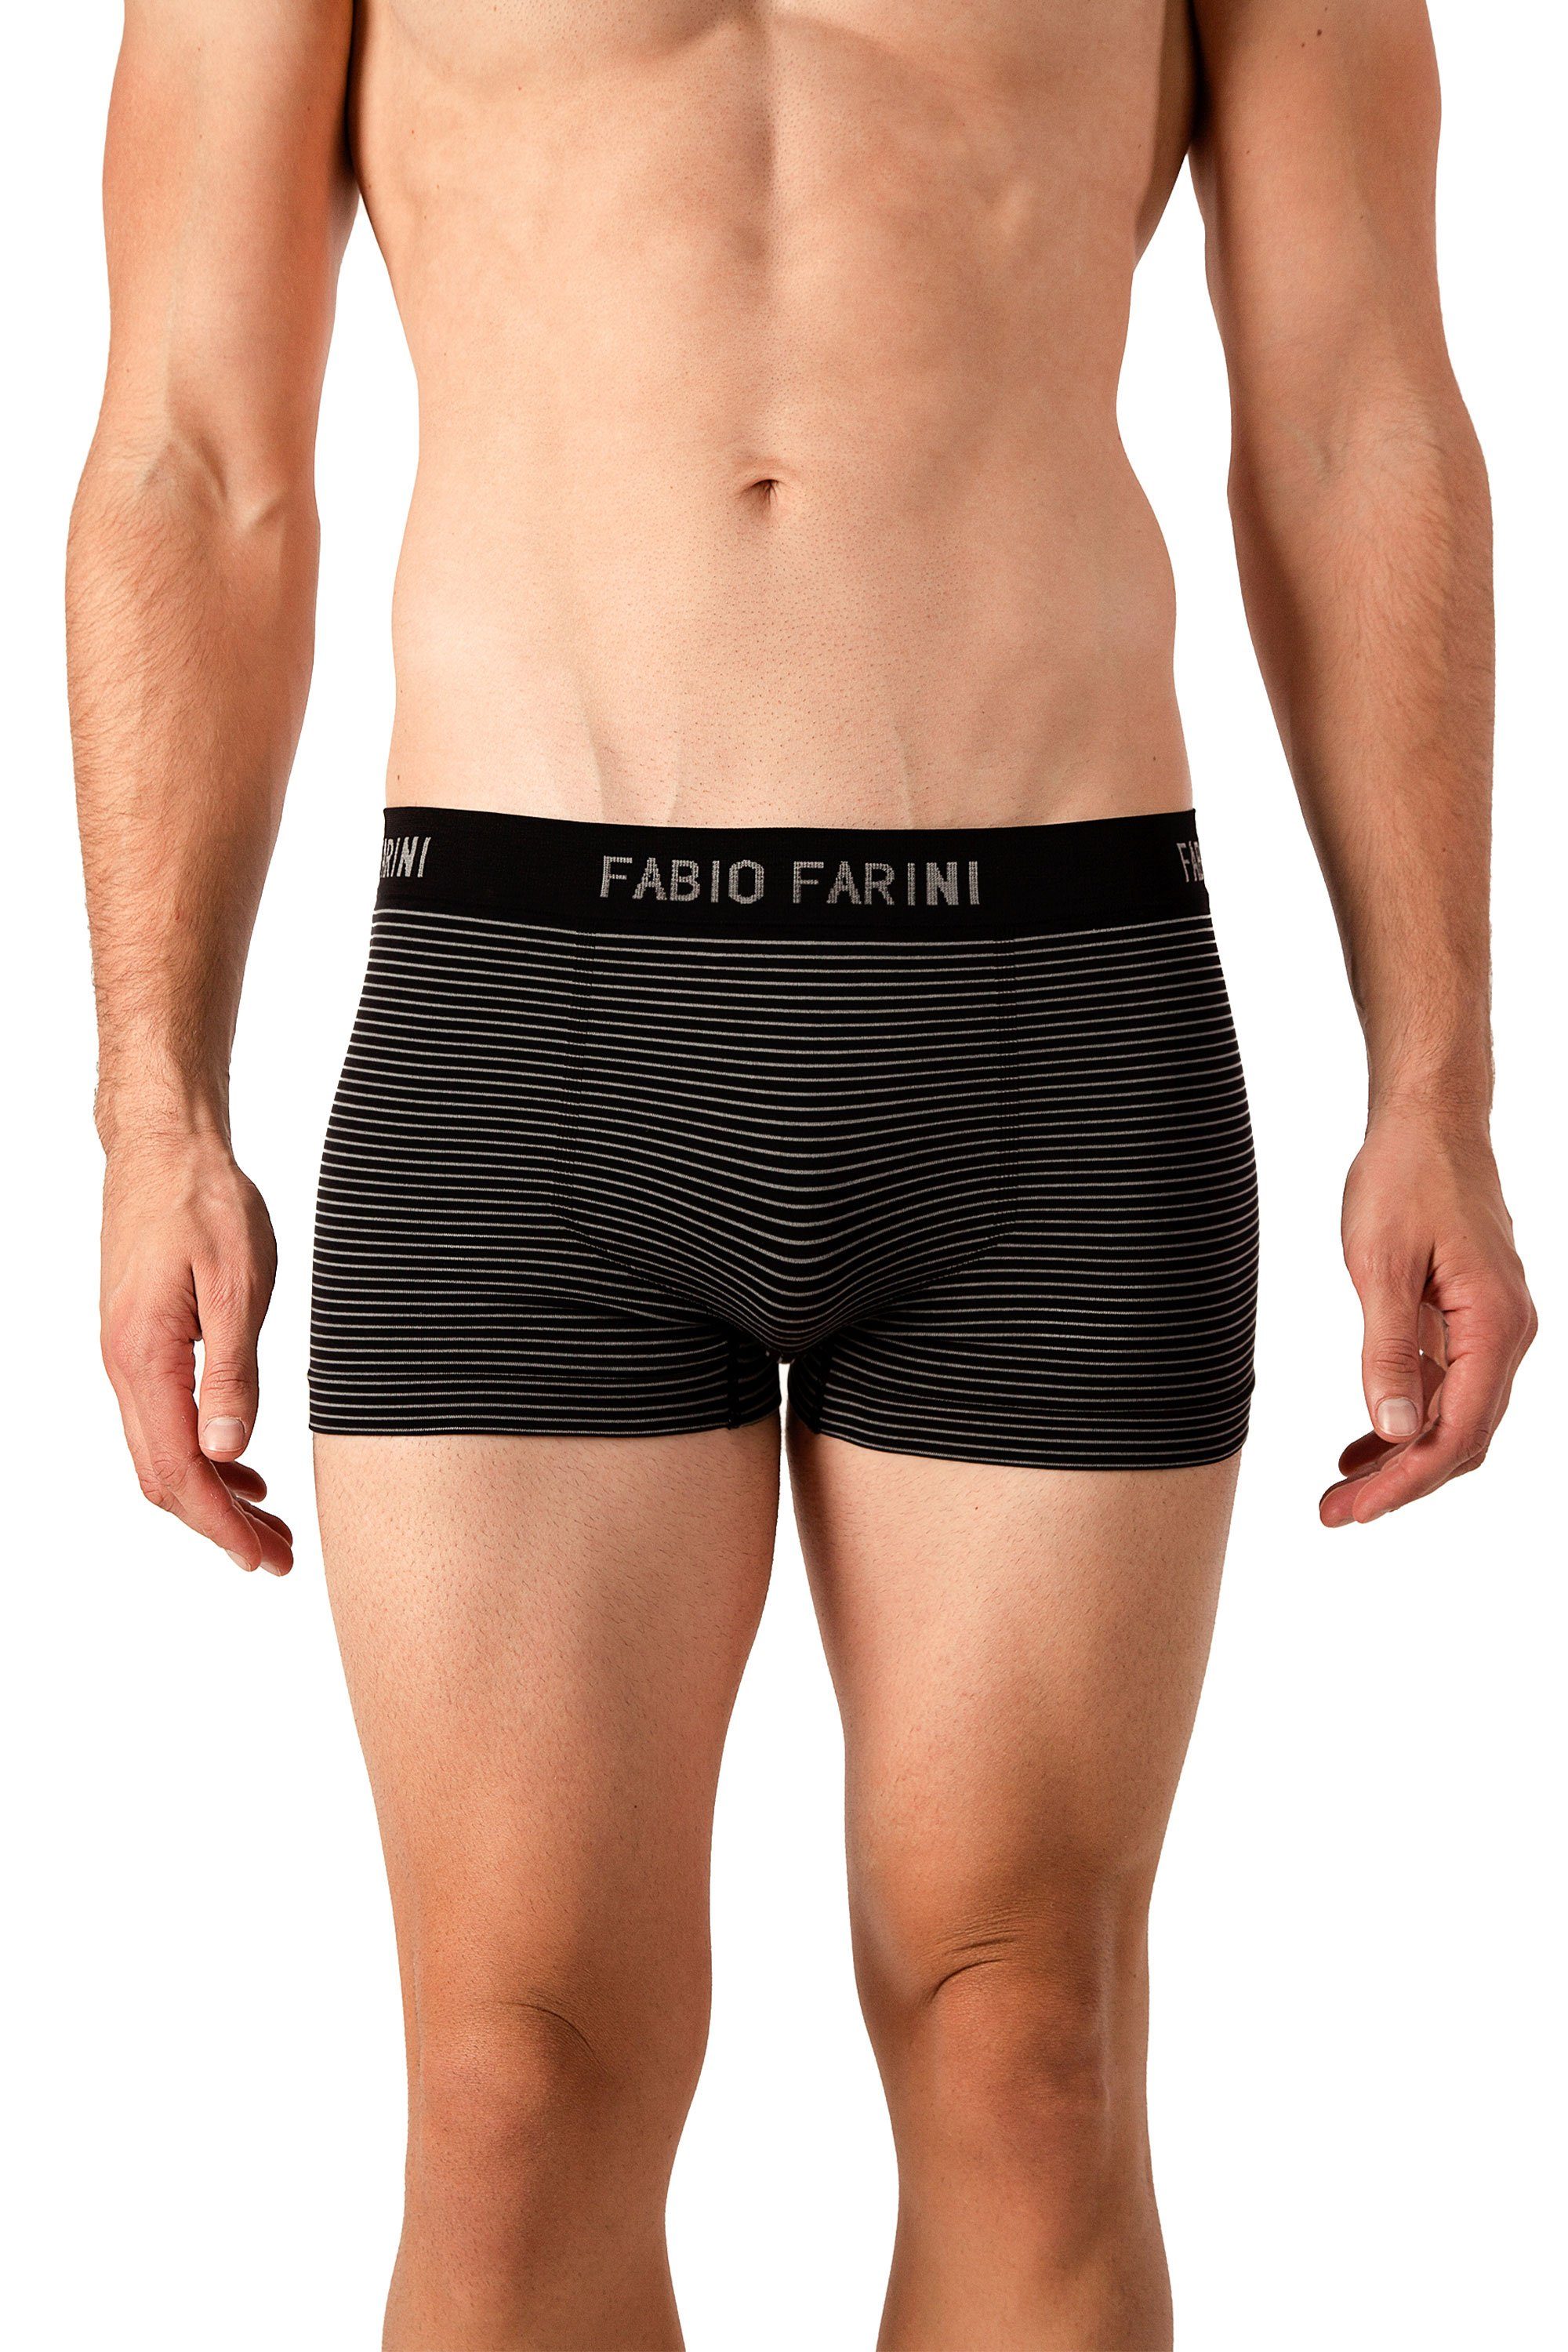 Herren sportlichen Set weicher Microfaser Retroshorts mit im Logoschriftzug Look (4-St) Farini Boxershorts Fabio 33 aus Männer Unterhosen -